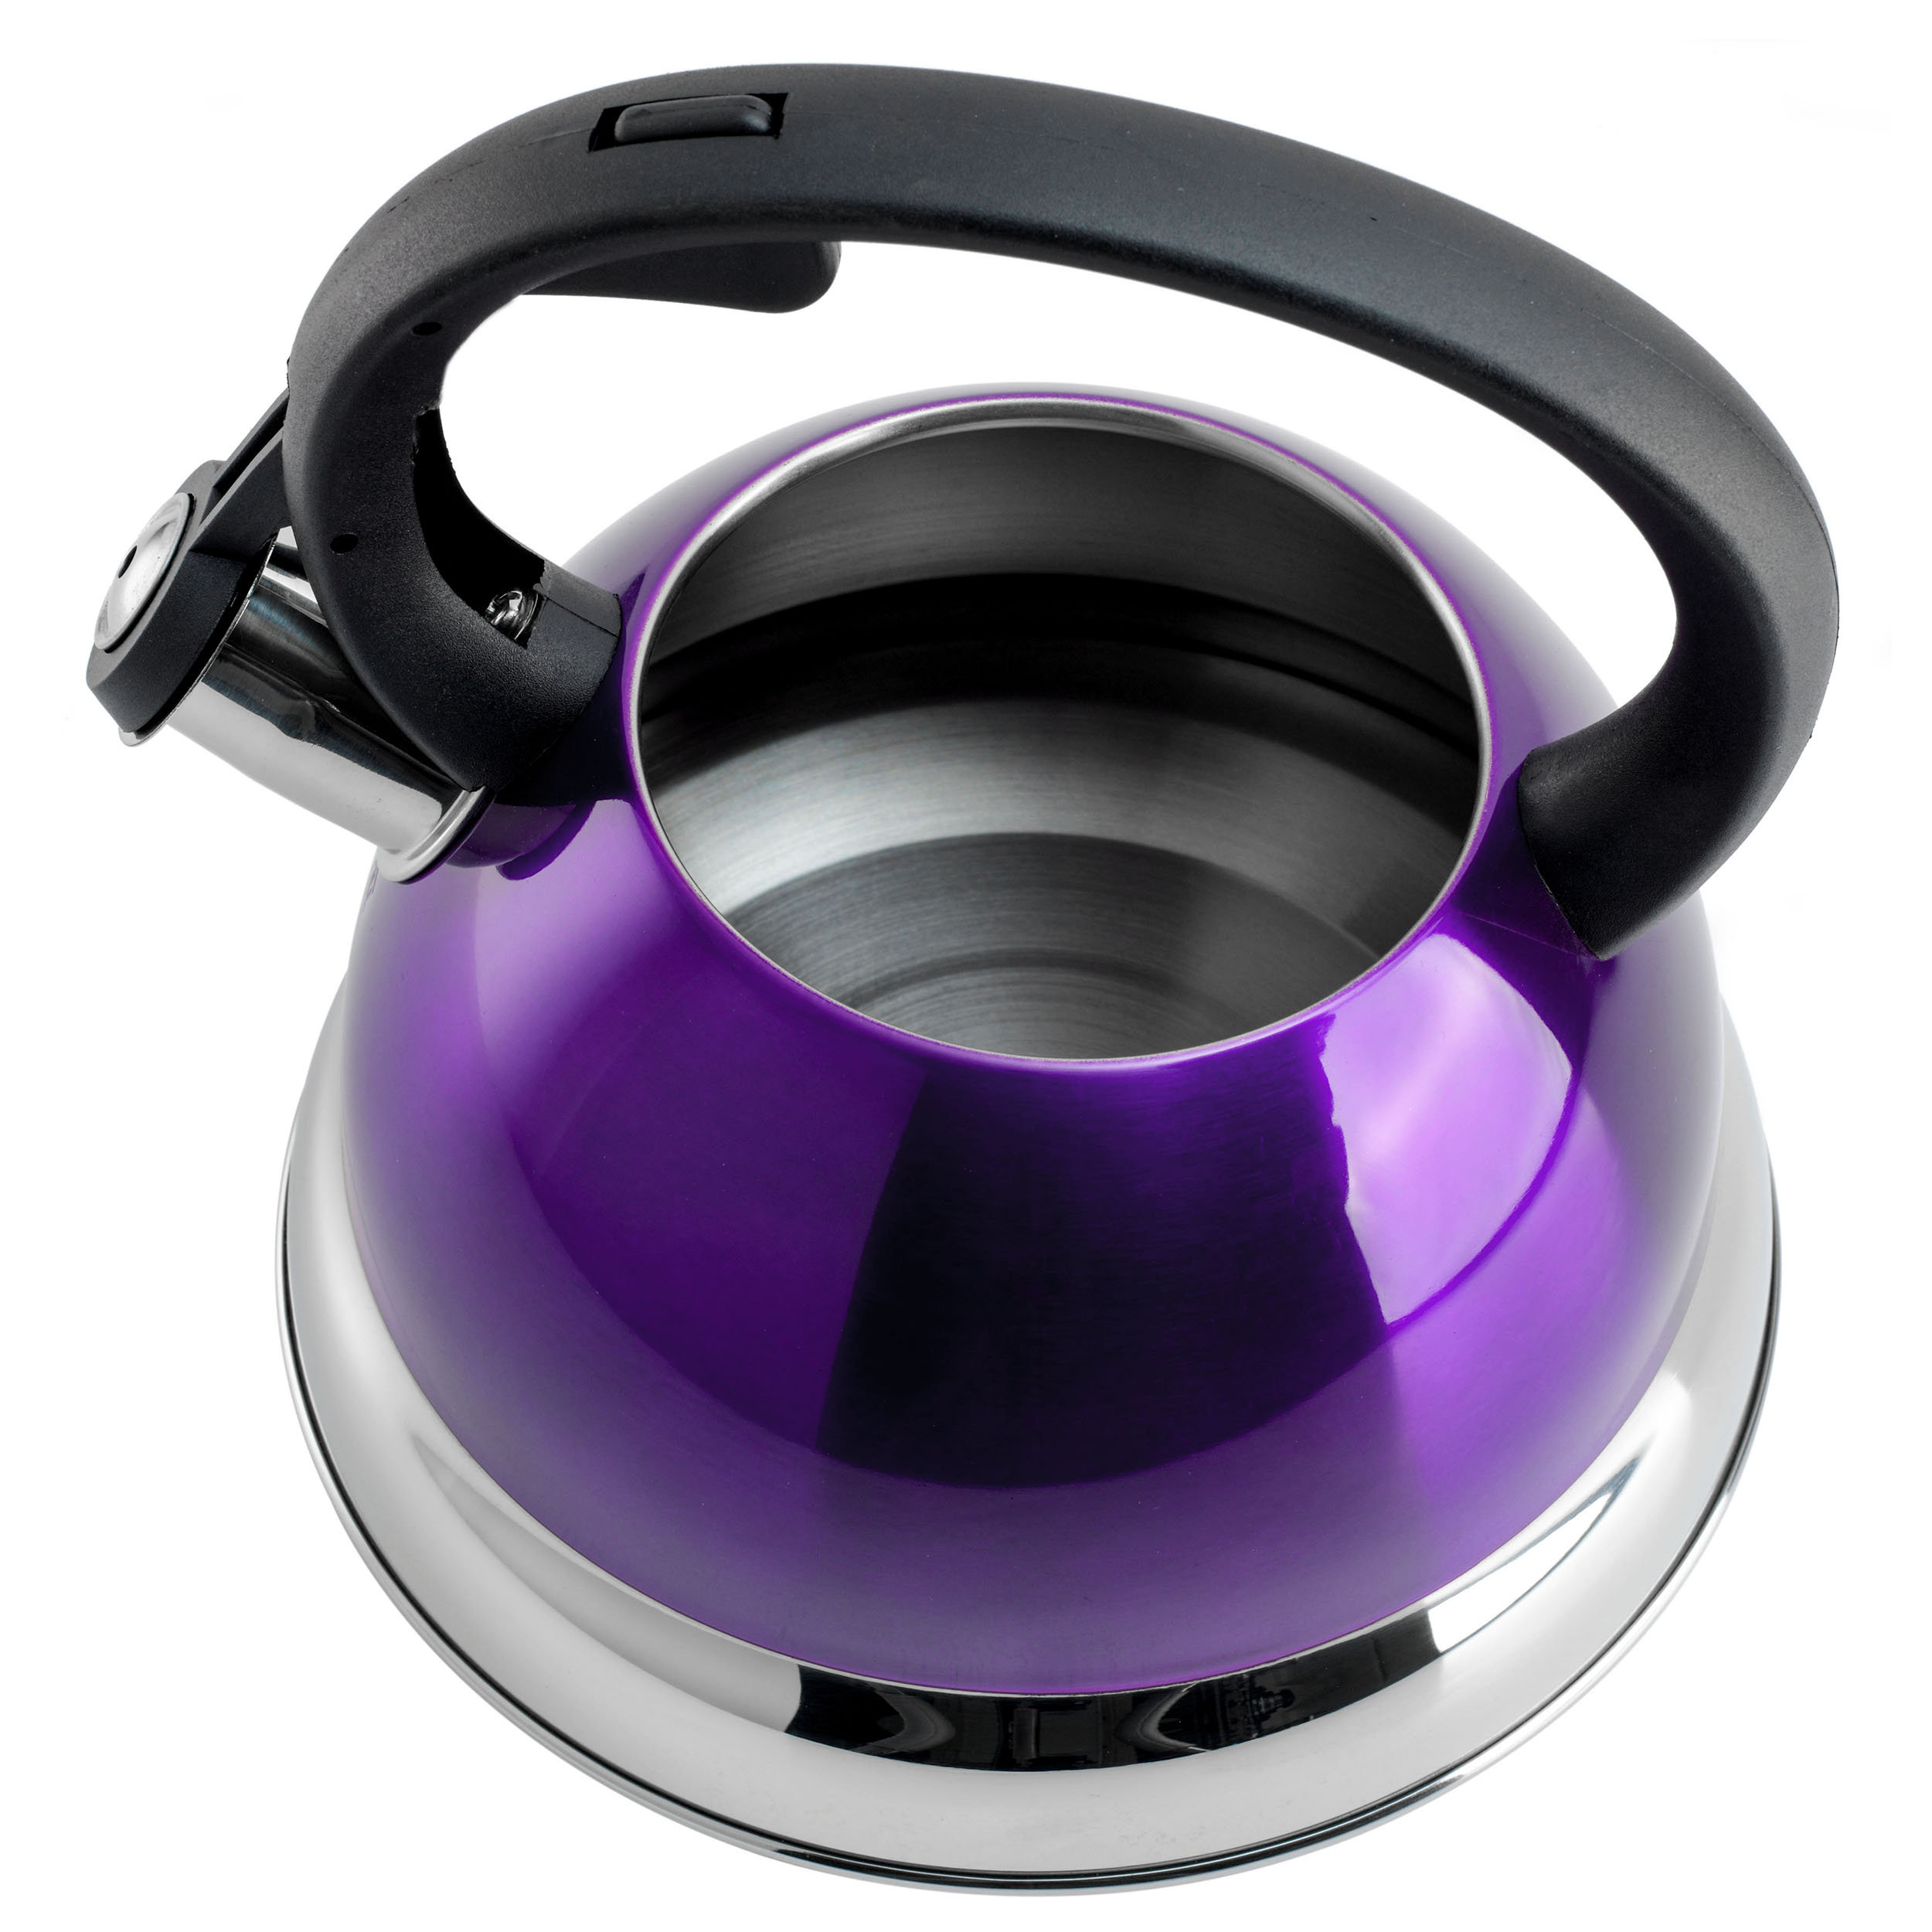 https://assets.wfcdn.com/im/89731037/compr-r85/2231/223154714/mr-coffee-flintshire-175-quart-whistling-stovetop-tea-kettle-in-blue.jpg